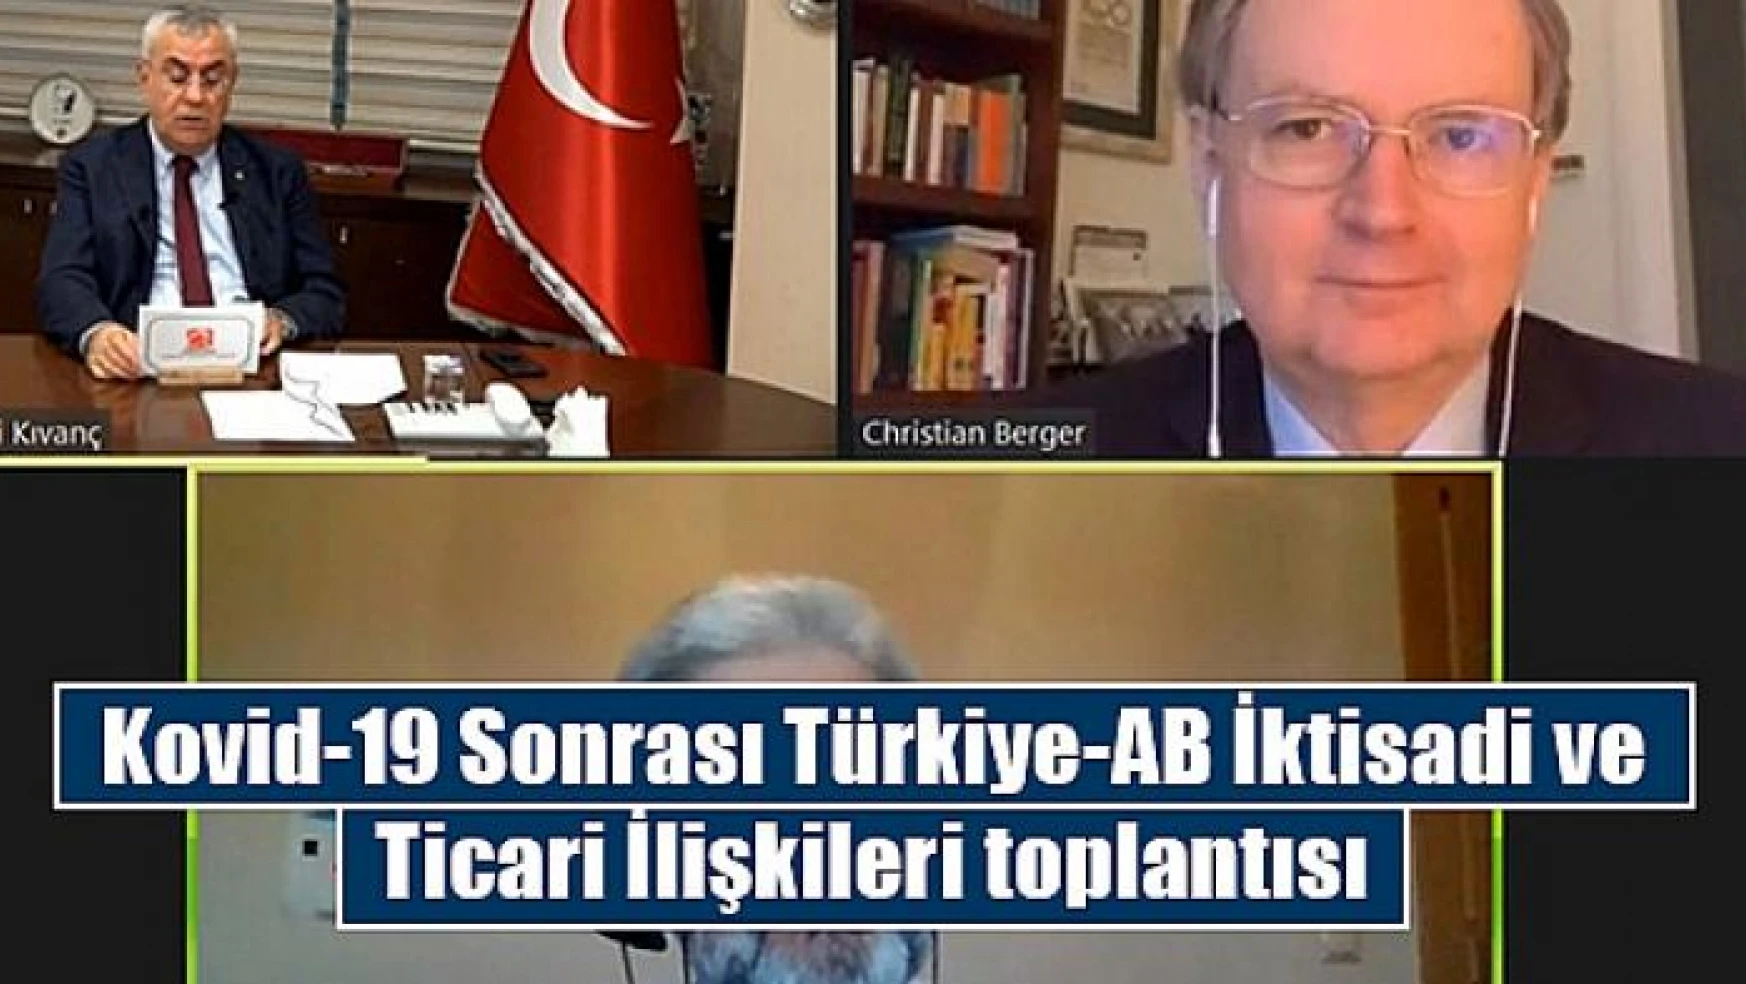 Kovid-19 Sonrası Türkiye-AB İktisadi ve Ticari İlişkileri toplantısı